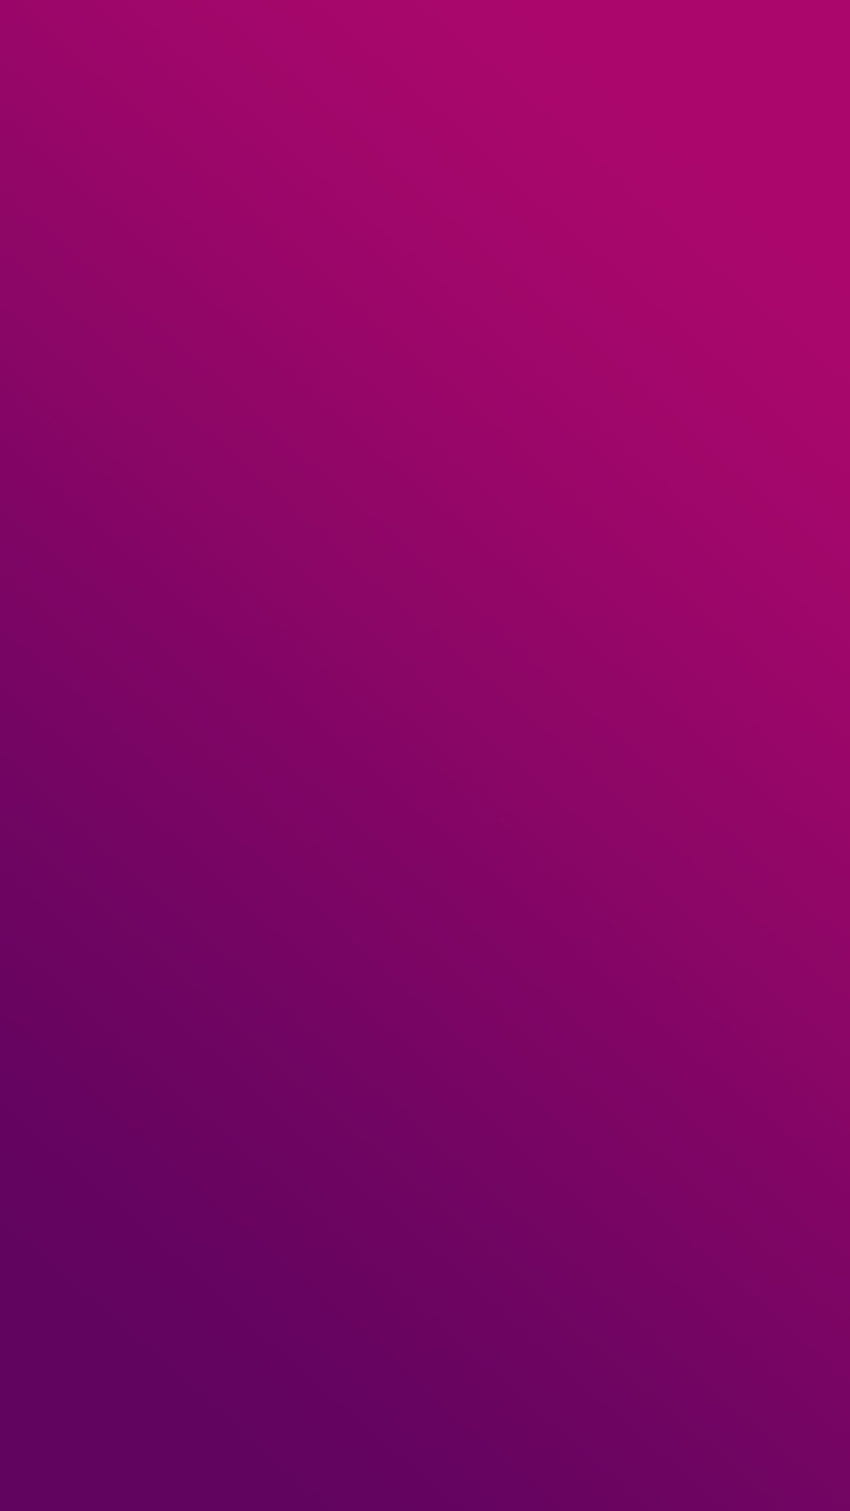 Über Fondos Lisos Purple Decoupage, modernes japanisches iPhone HD-Handy-Hintergrundbild